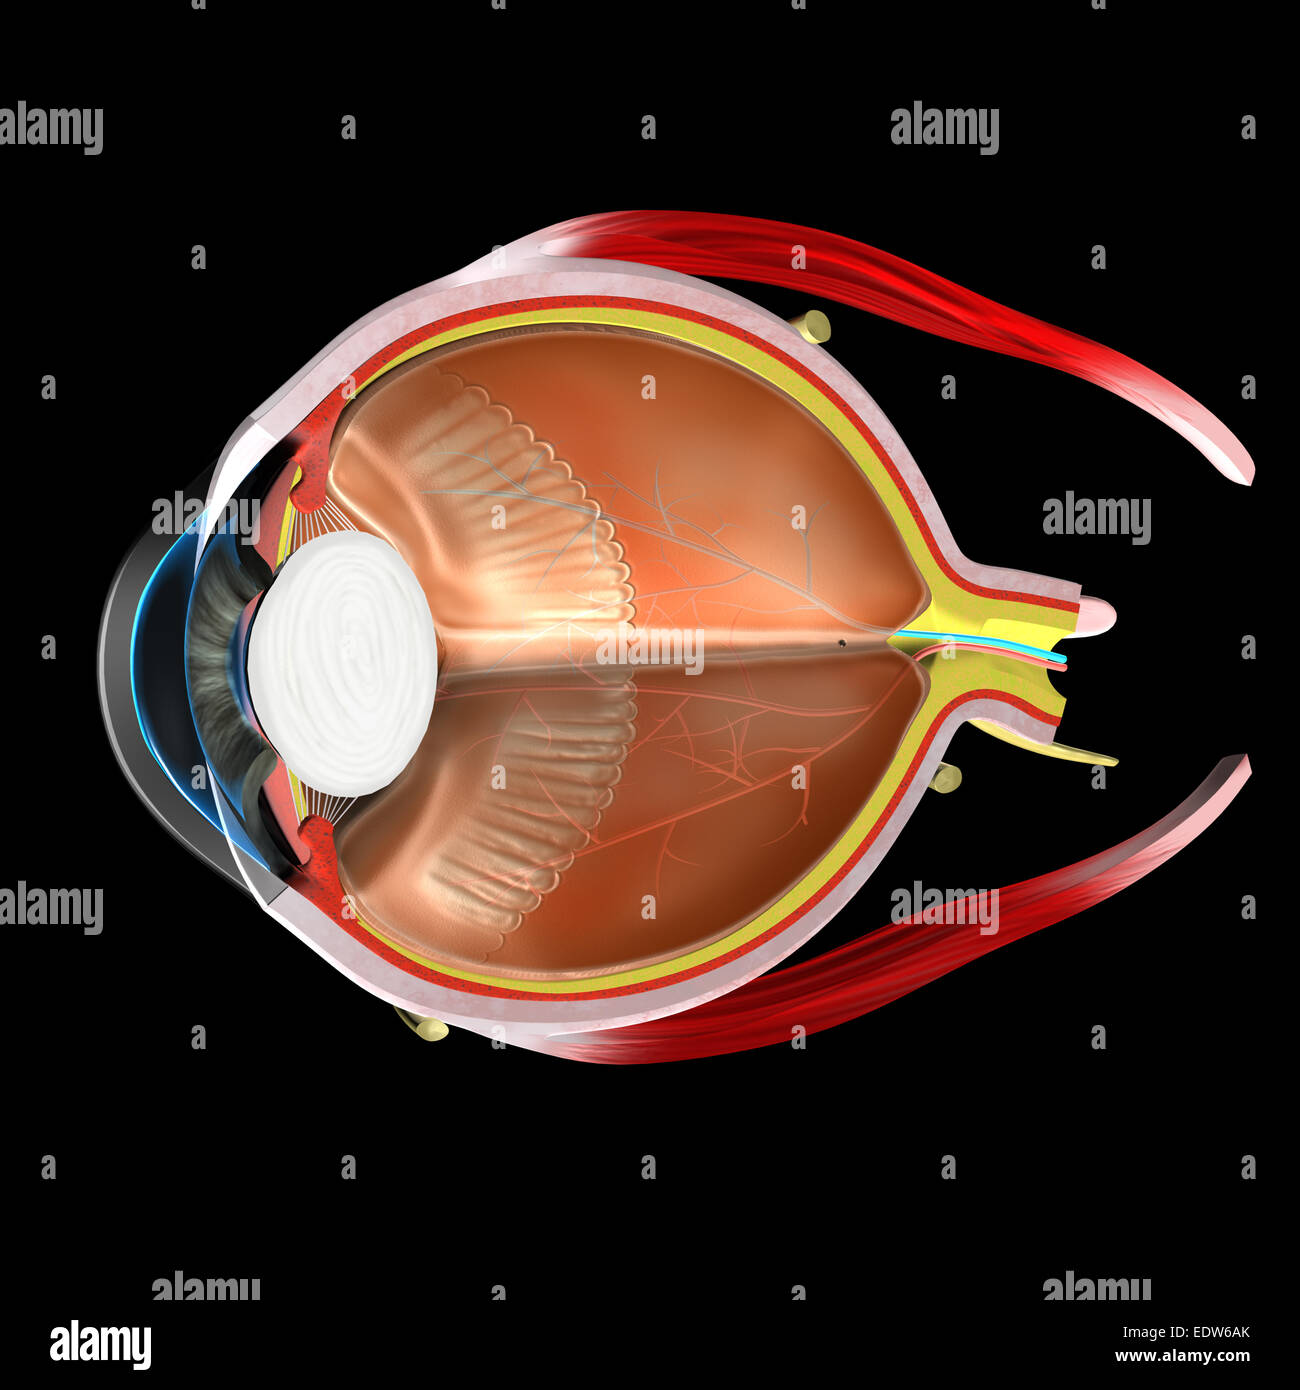 Anatomia dell'occhio umano Foto Stock